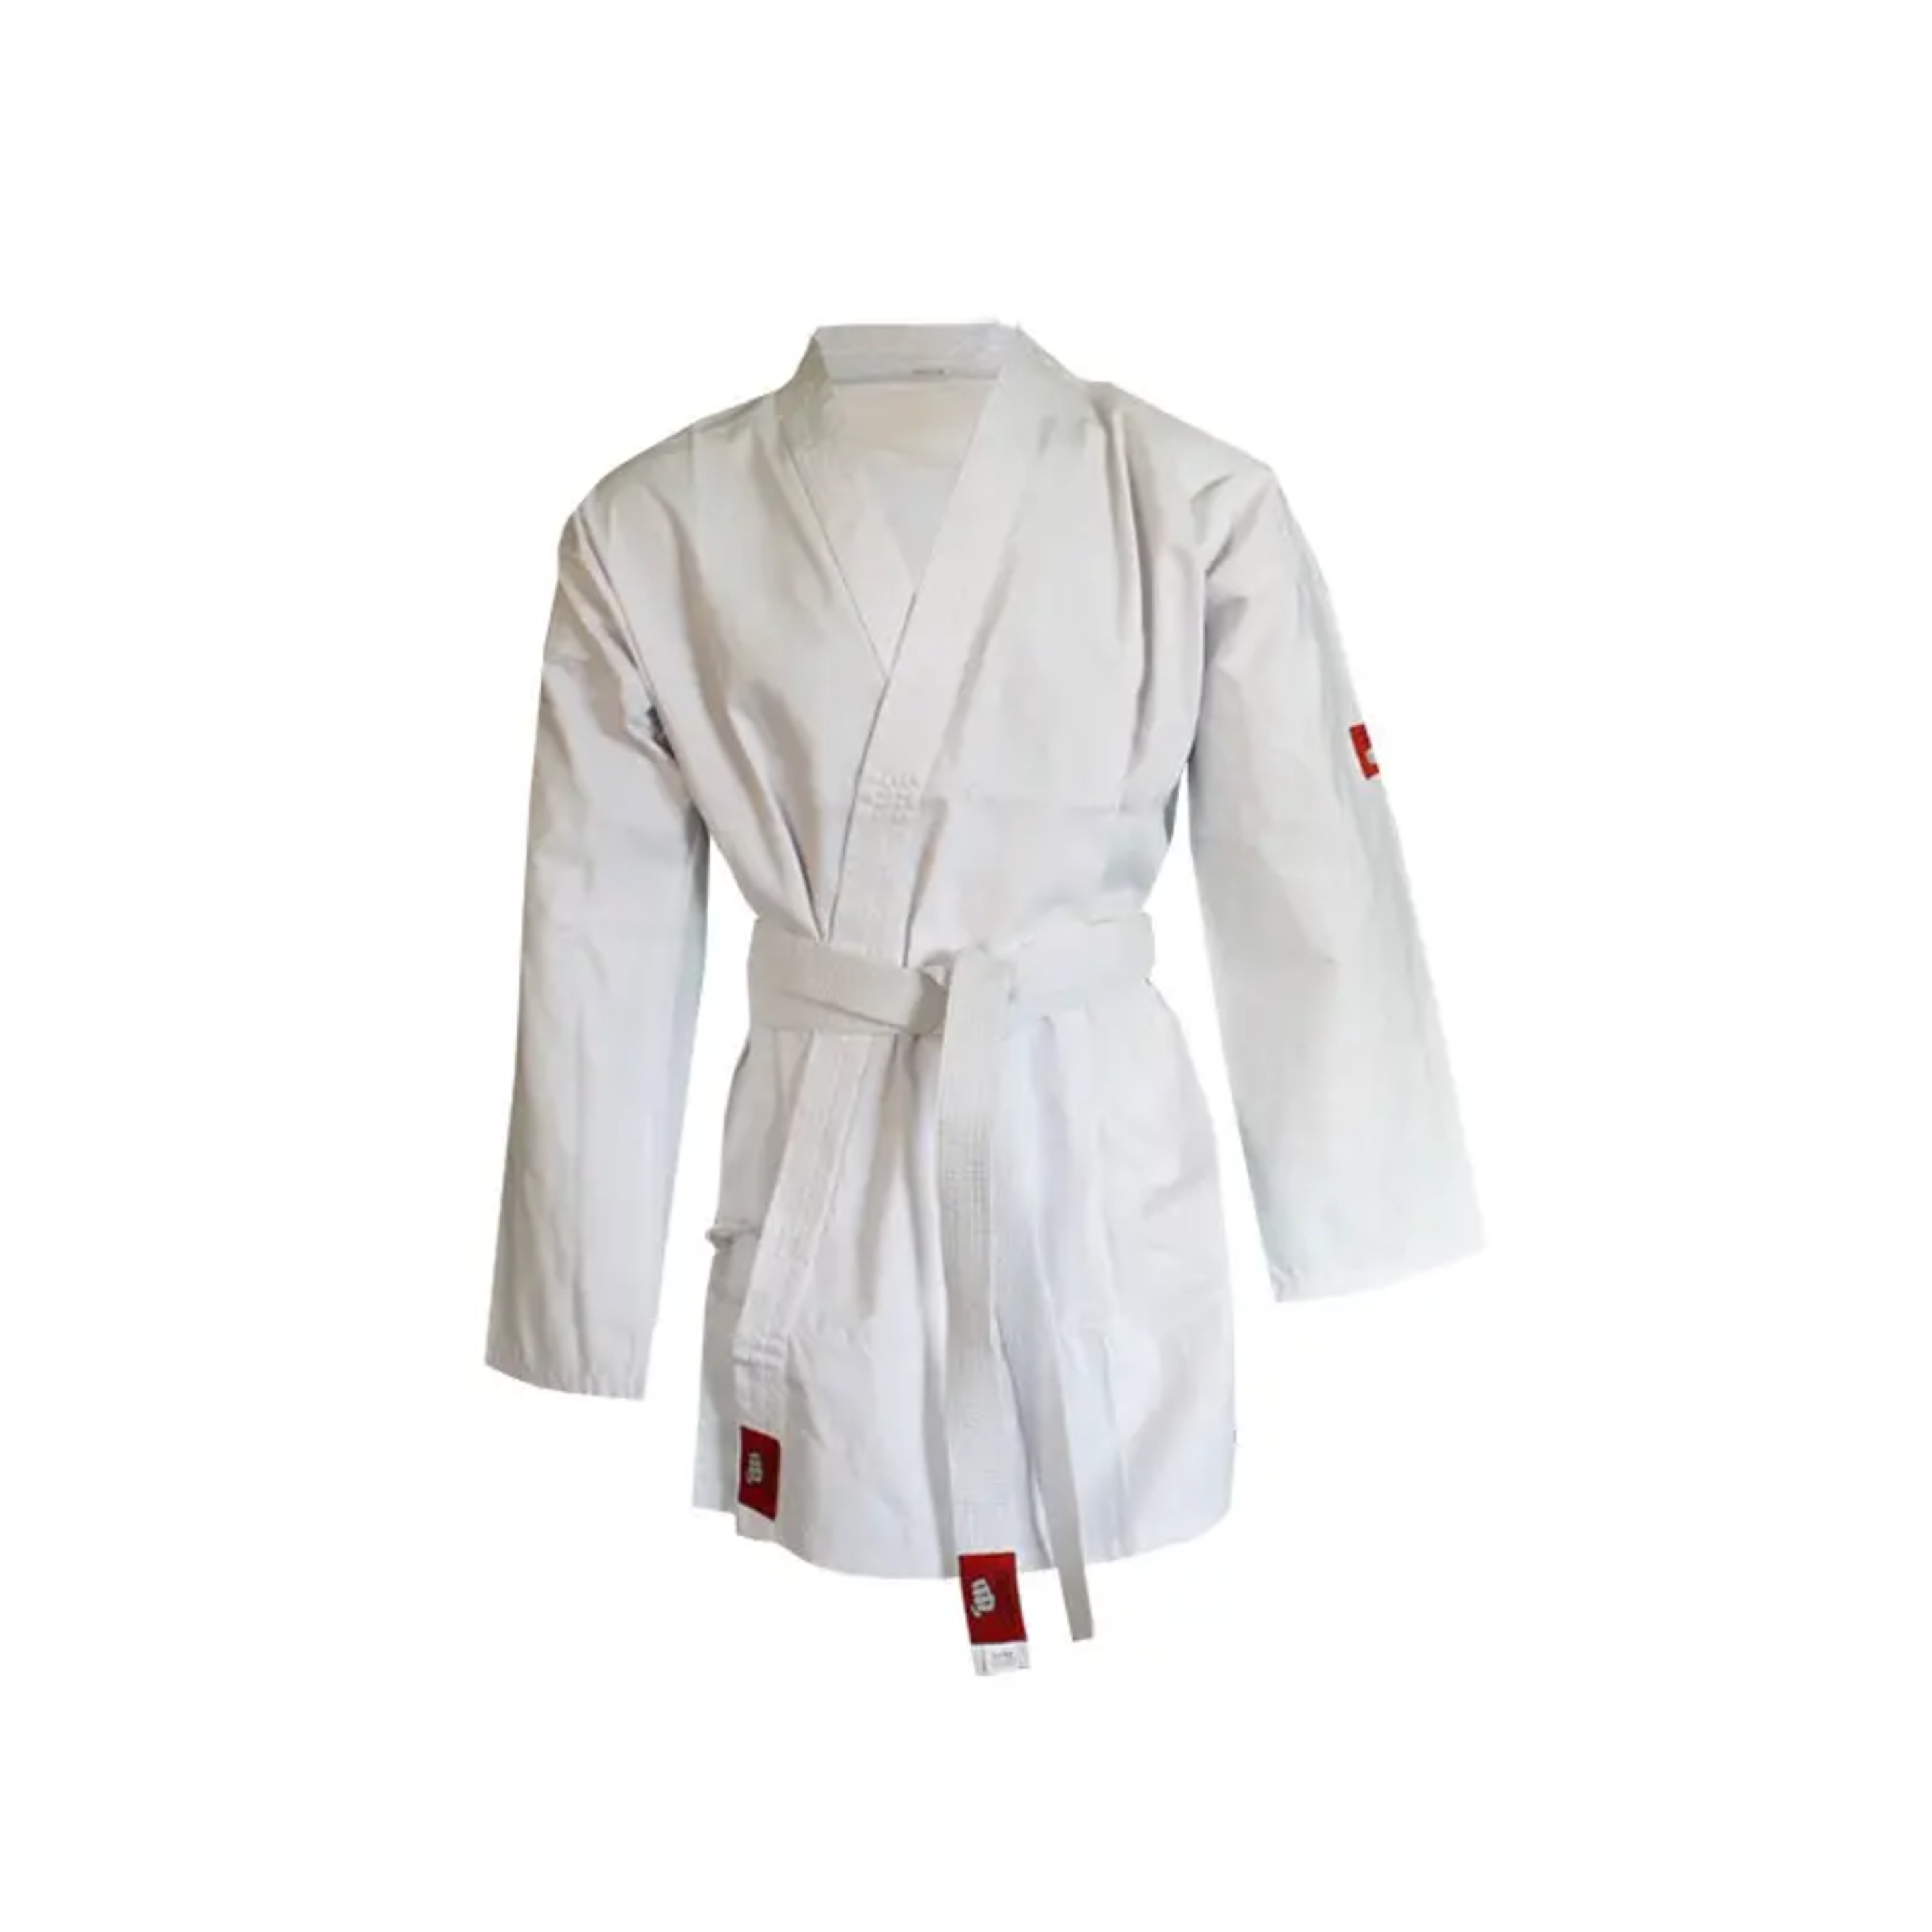 Judogi Yosihiro -kimono Judo- 100%  -incl. Cinturon Blanco   2/150cm - Blanco - Kimono Karate-  65%  - 35%  Blanco  MKP